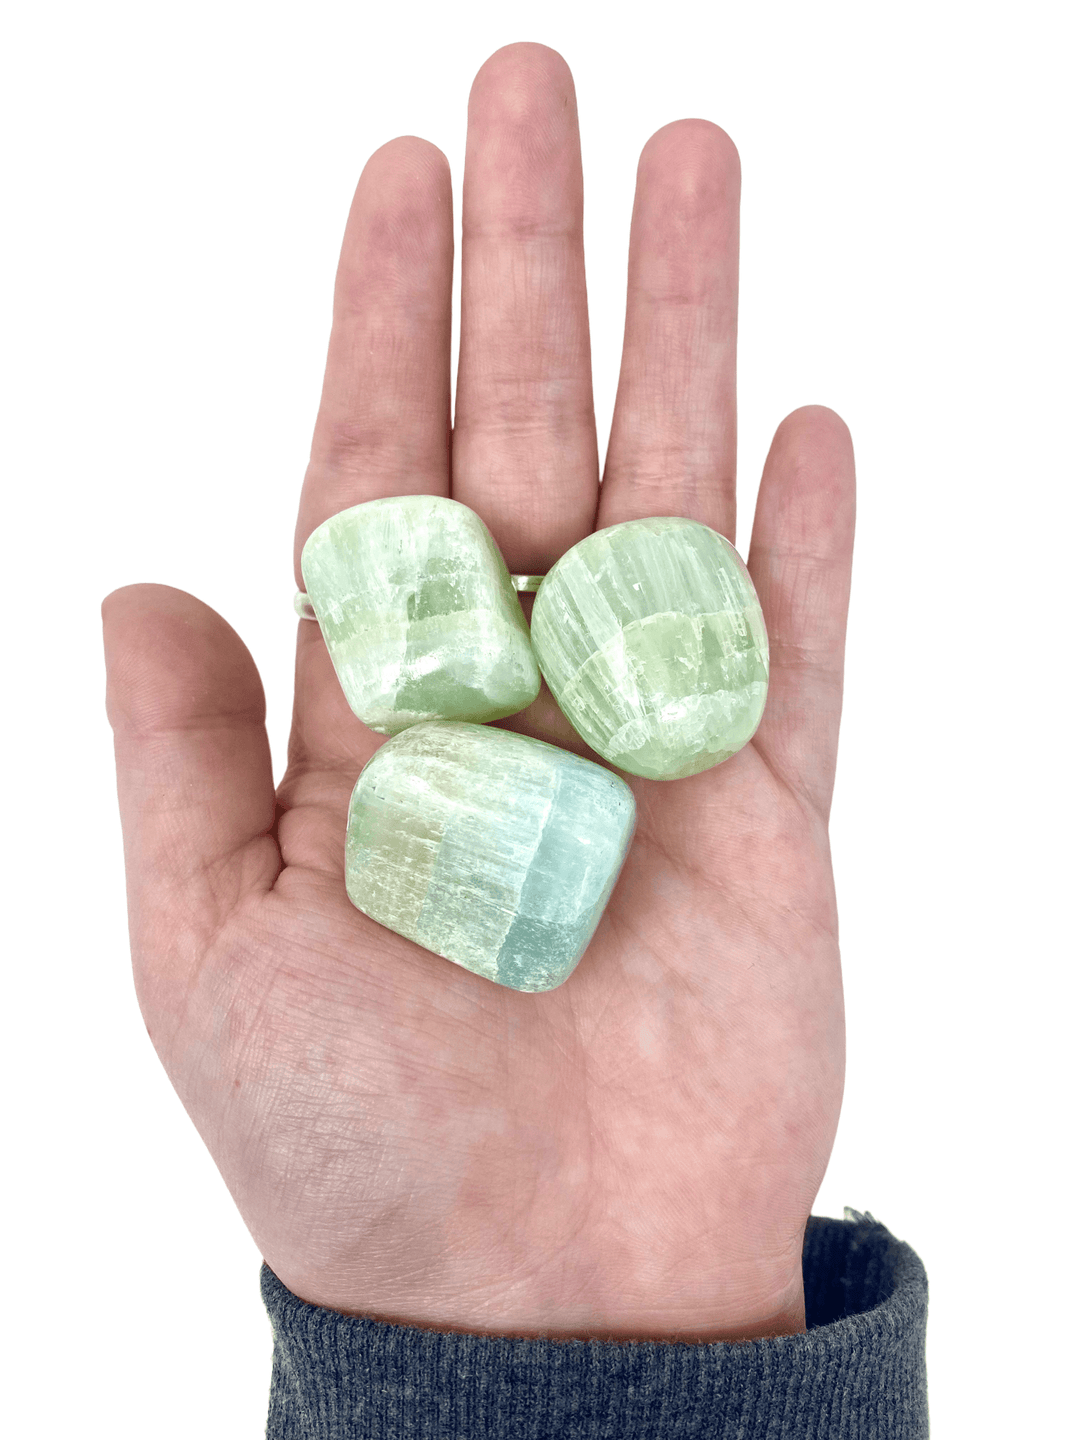 Pistachio Calcite Tumbled Stones - 1" Long - Esme and Elodie